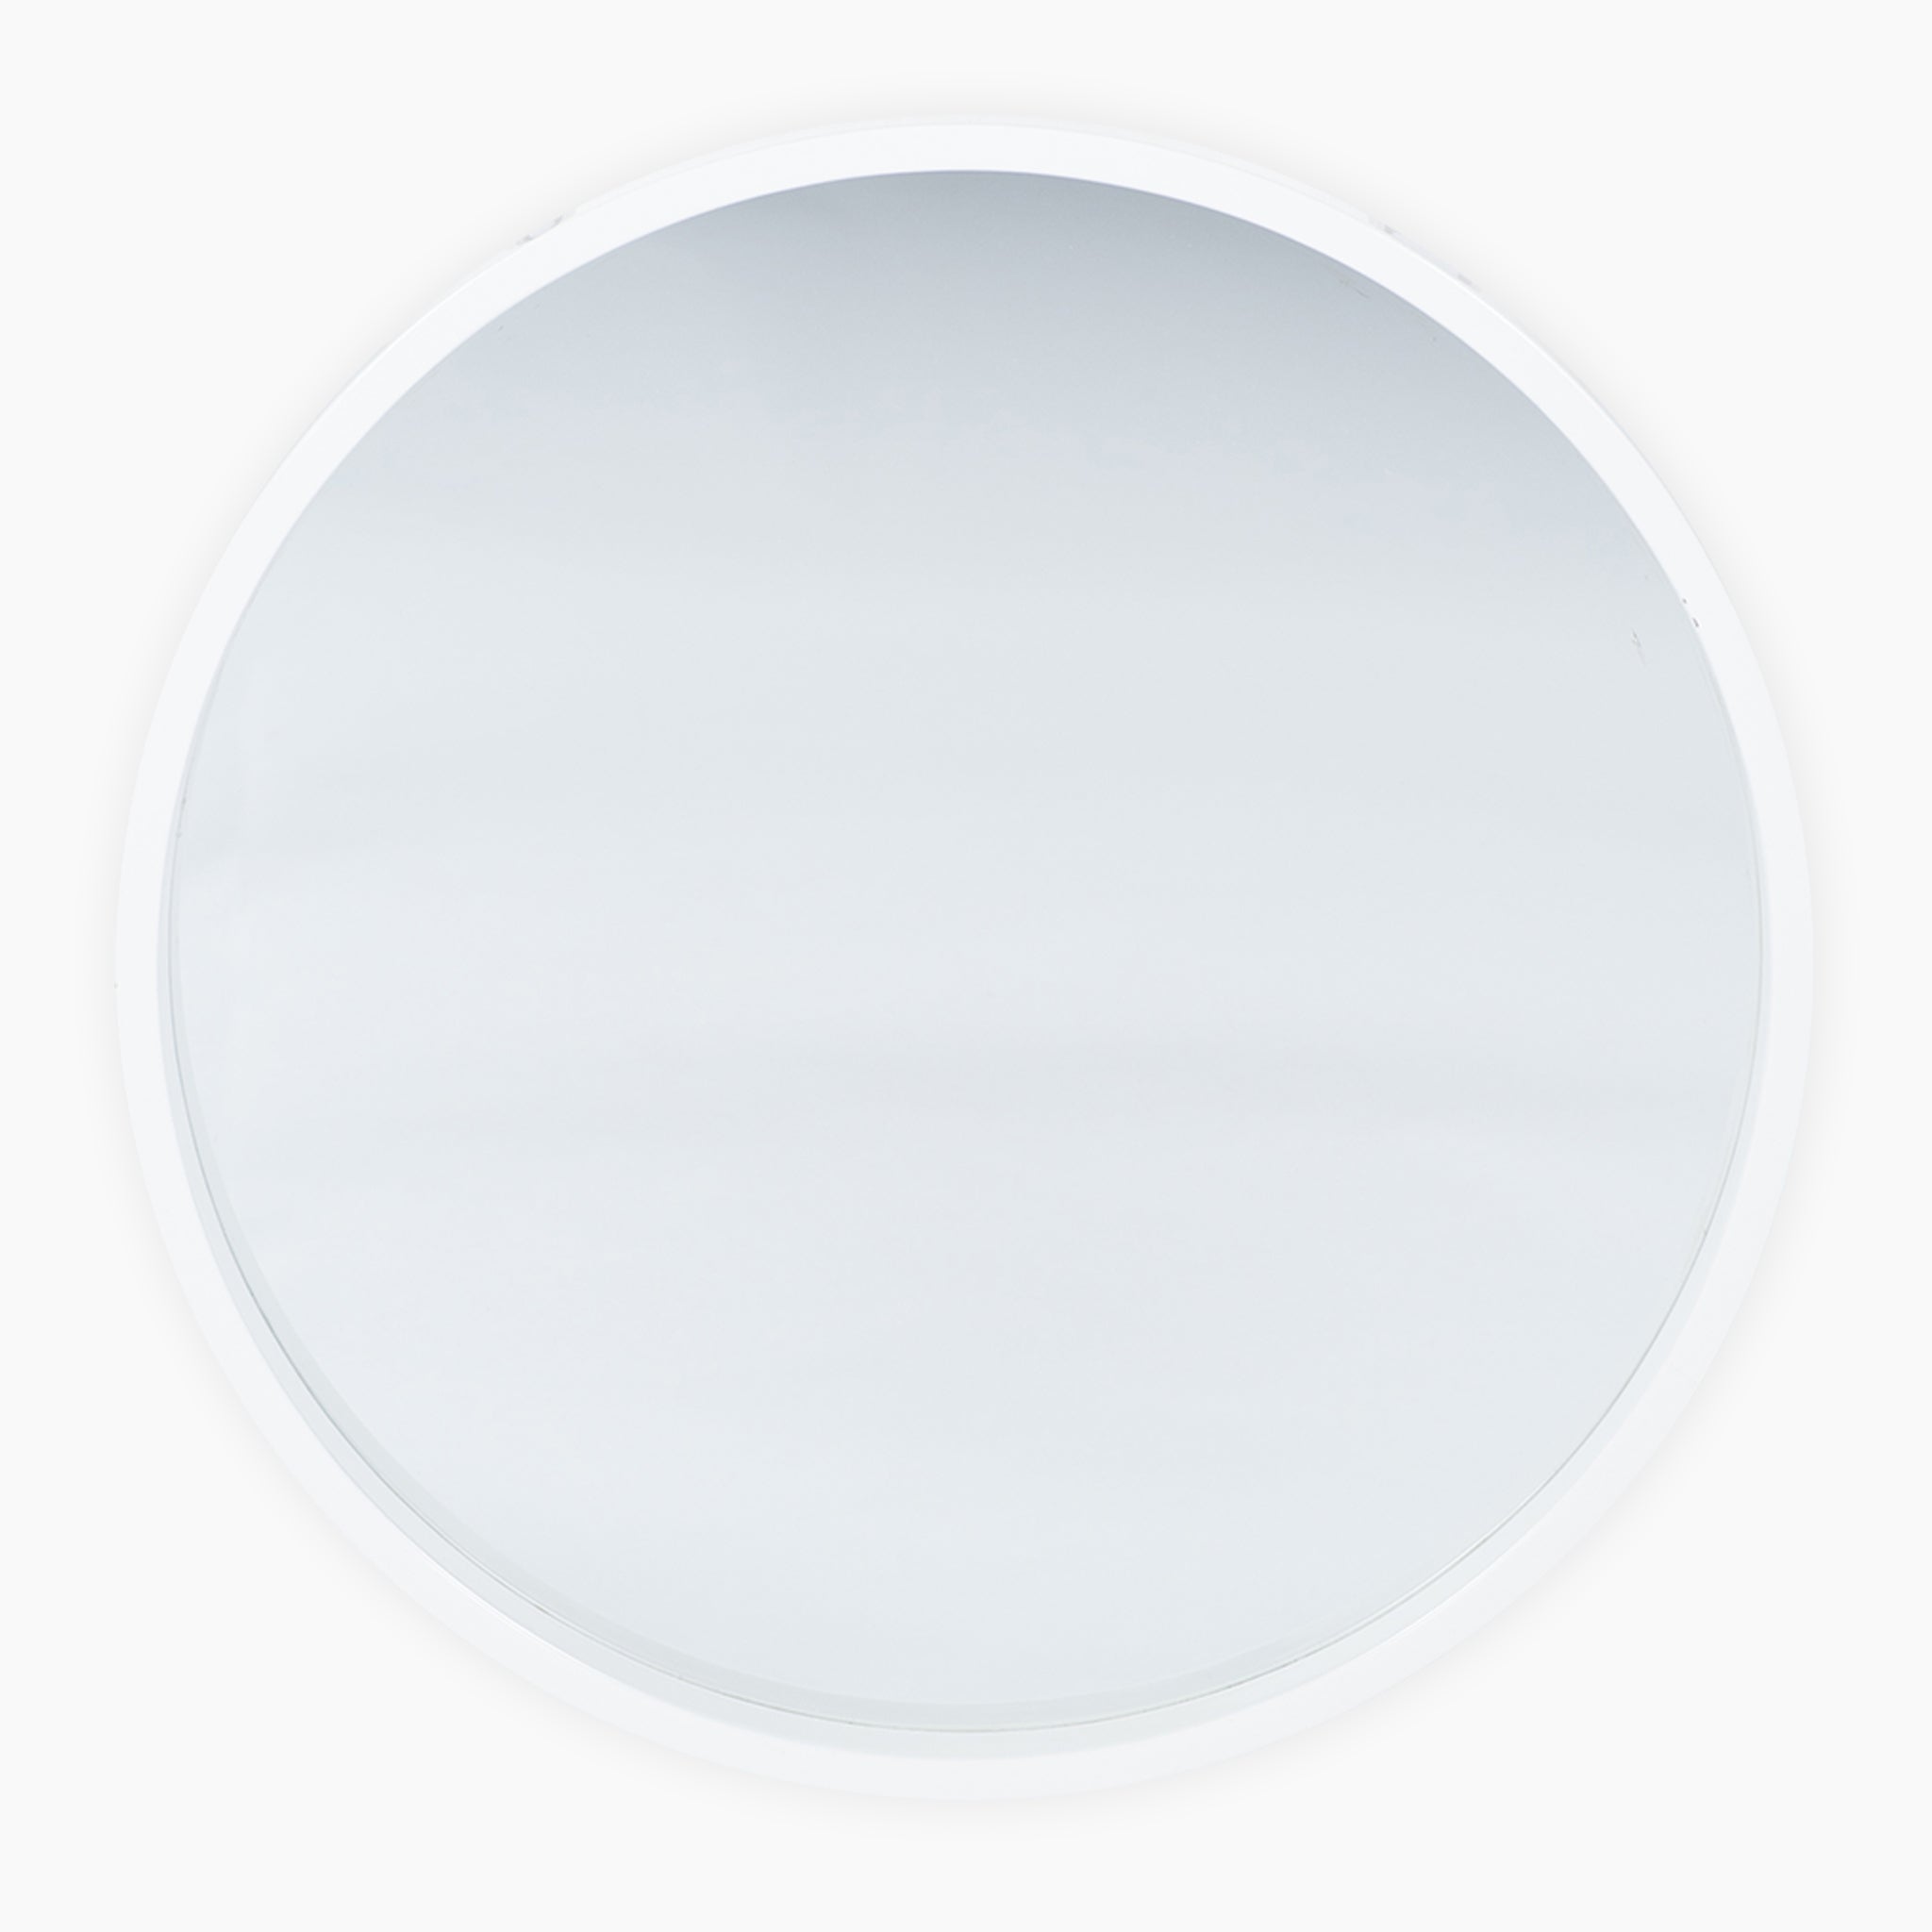 Glossy White Wood Round Wall Mirror